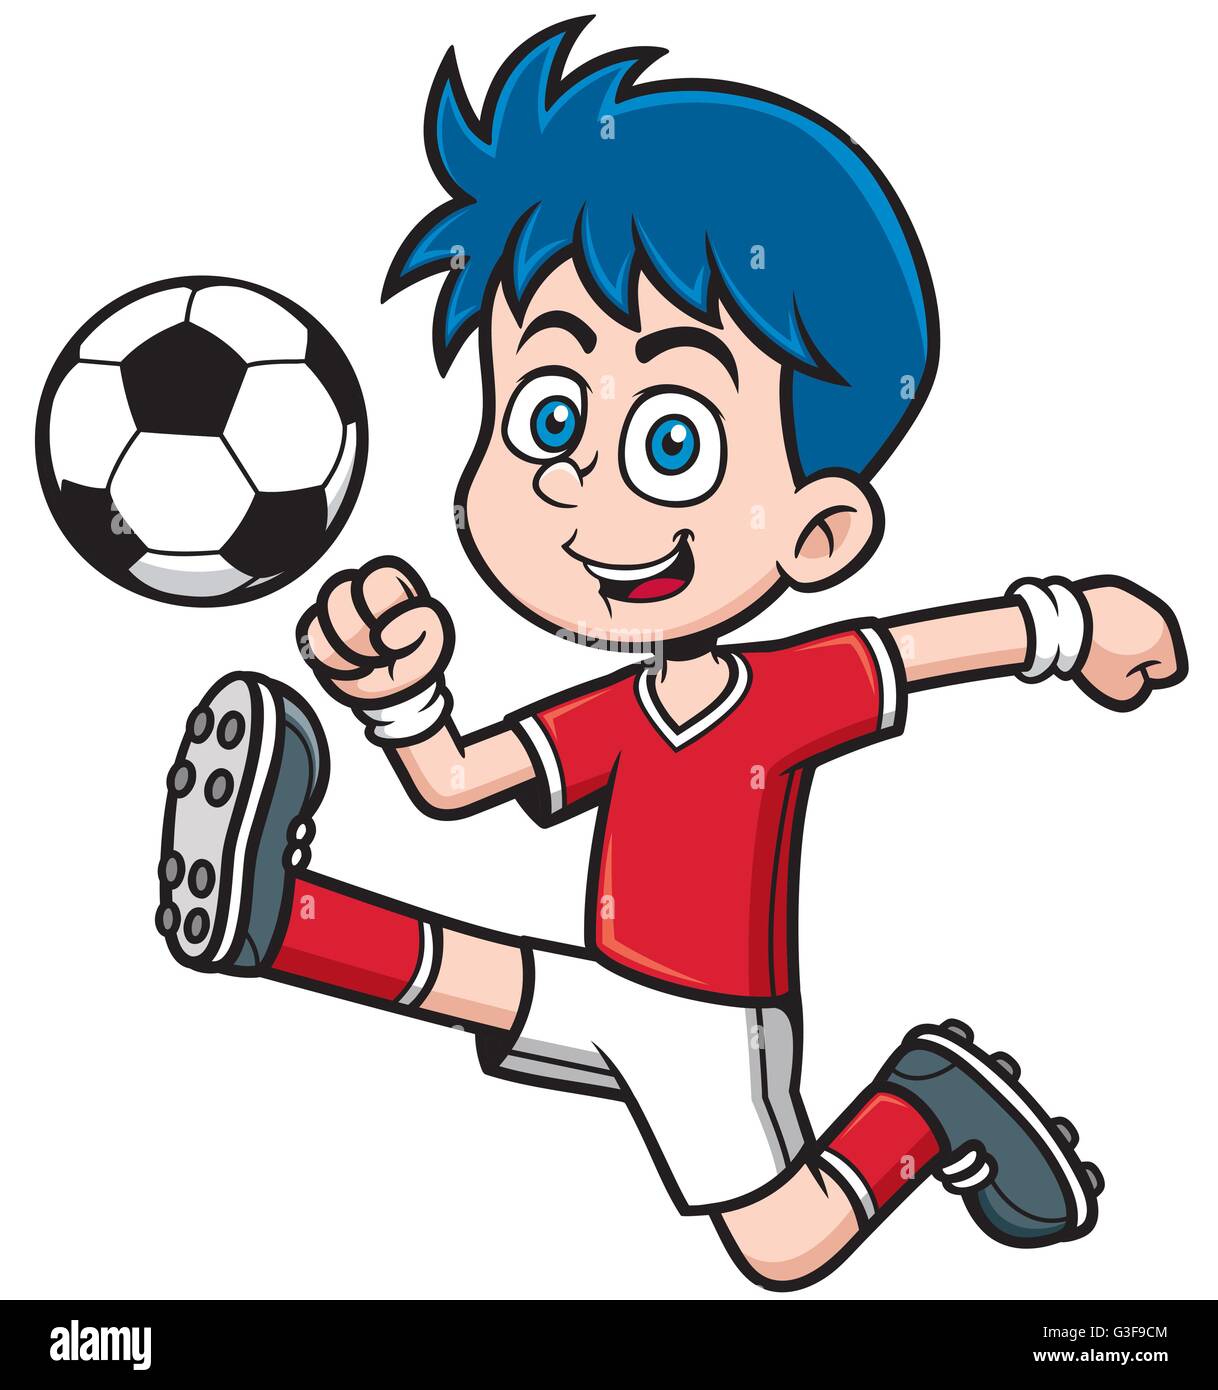 Vector illustration of Soccer player cartoon Stock Vector Art